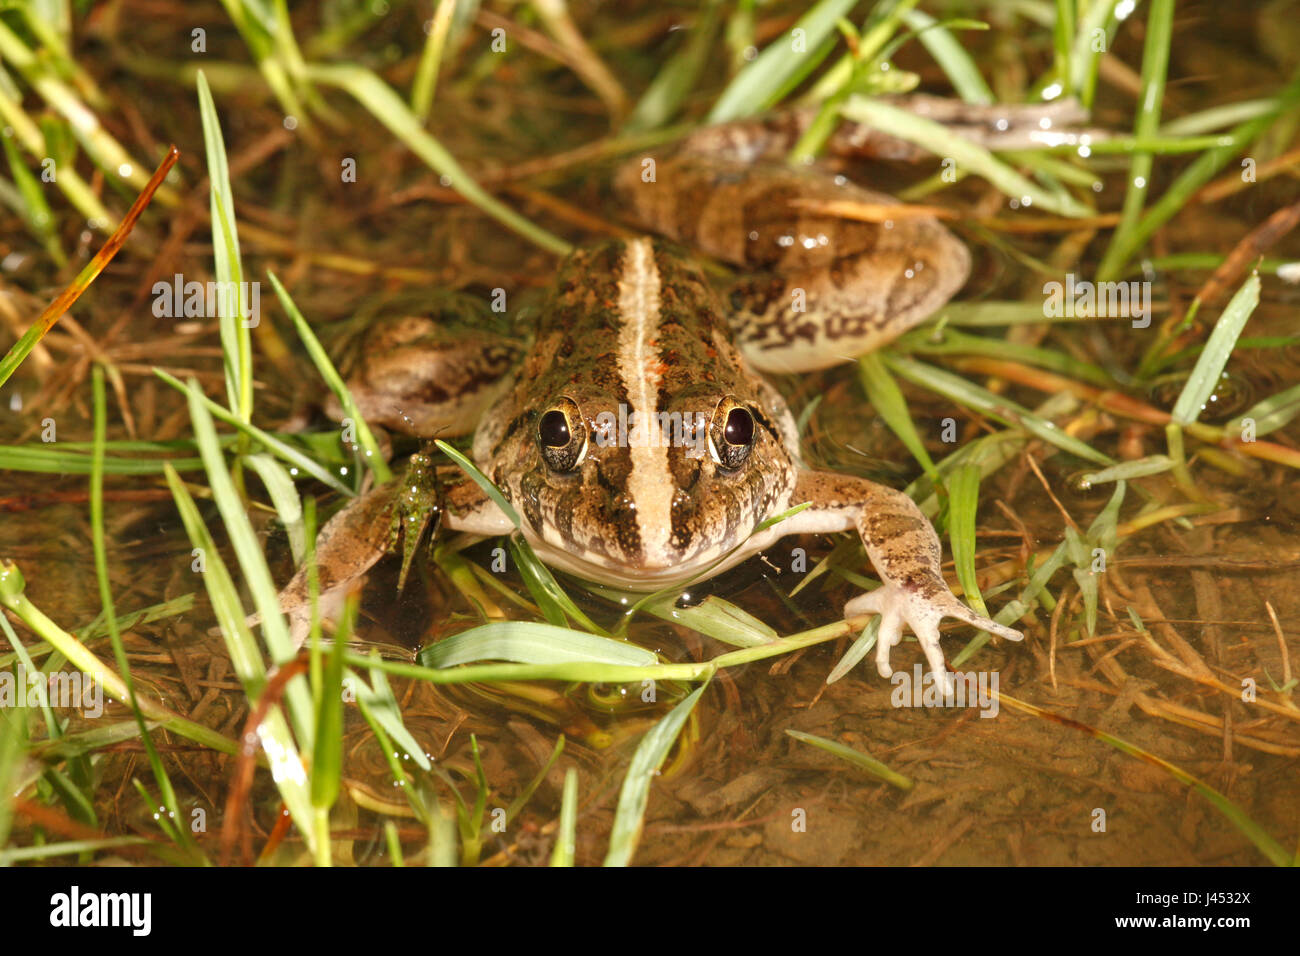 Foto von einem Grasfrosch in eine Rainpool zwischen Rasen Stockfoto